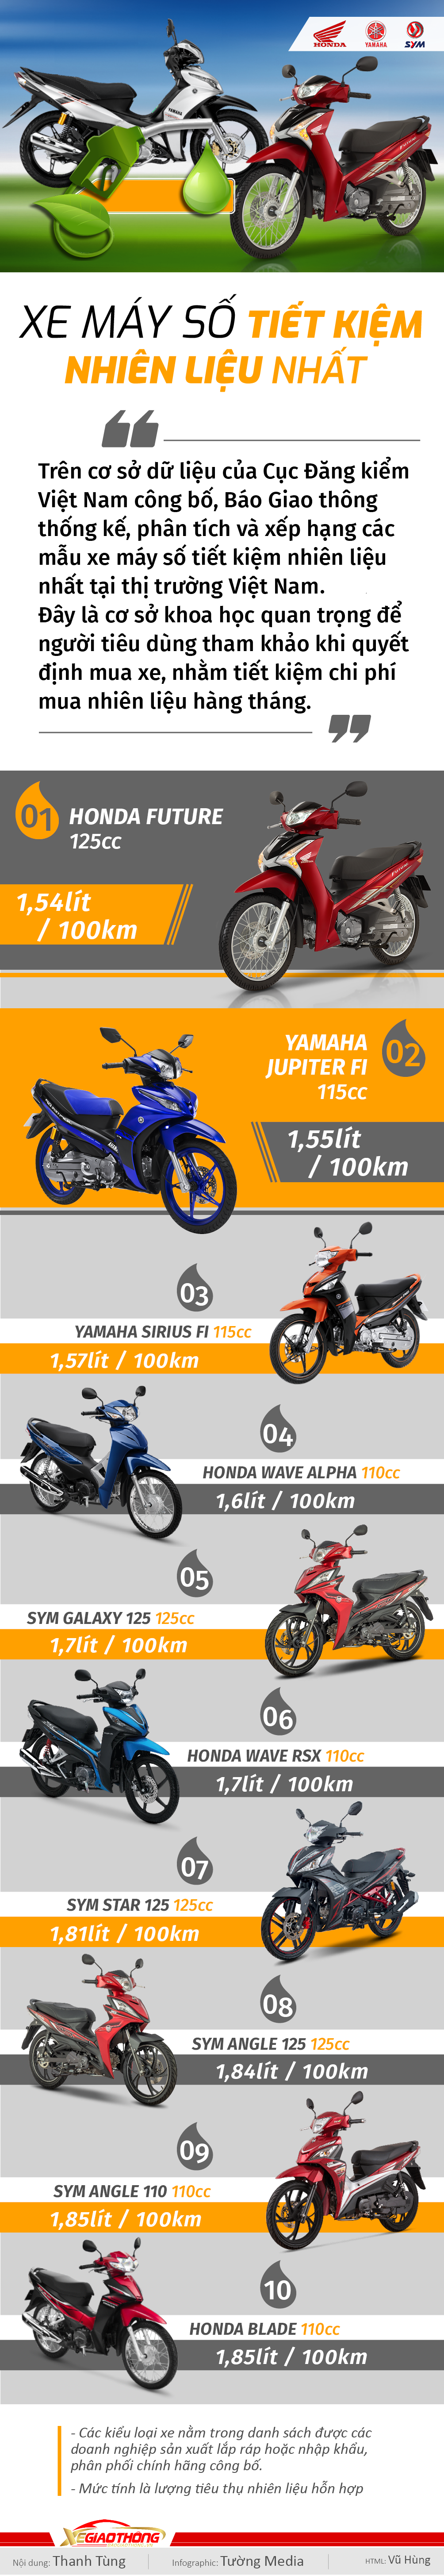 Infographic: Top 10 xe máy số tiết kiệm nhiên liệu nhất Việt Nam - 1